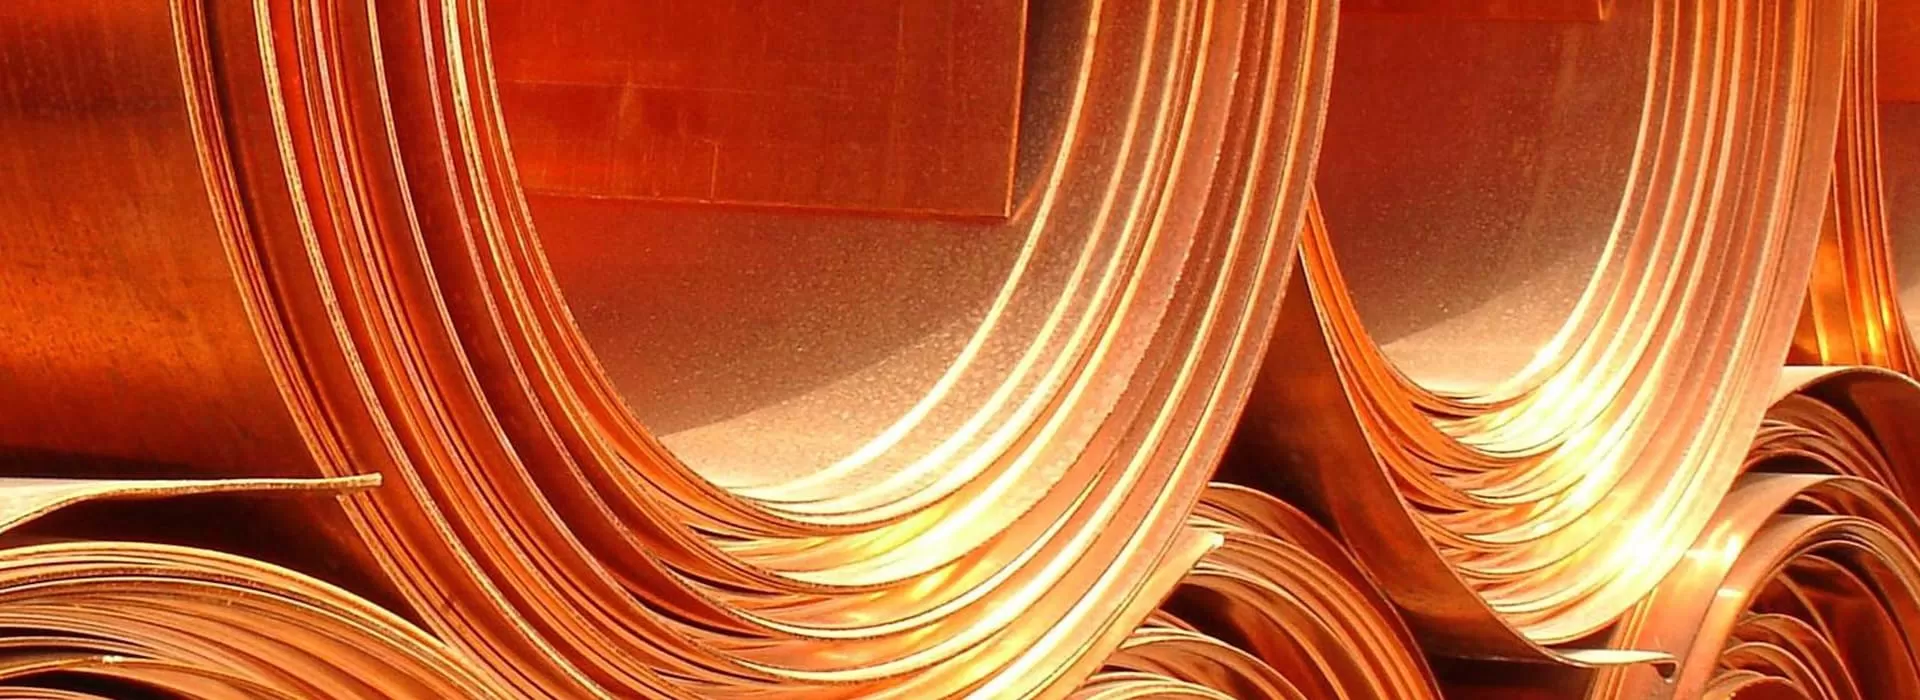 Beryllium Copper Foil Ship Strip